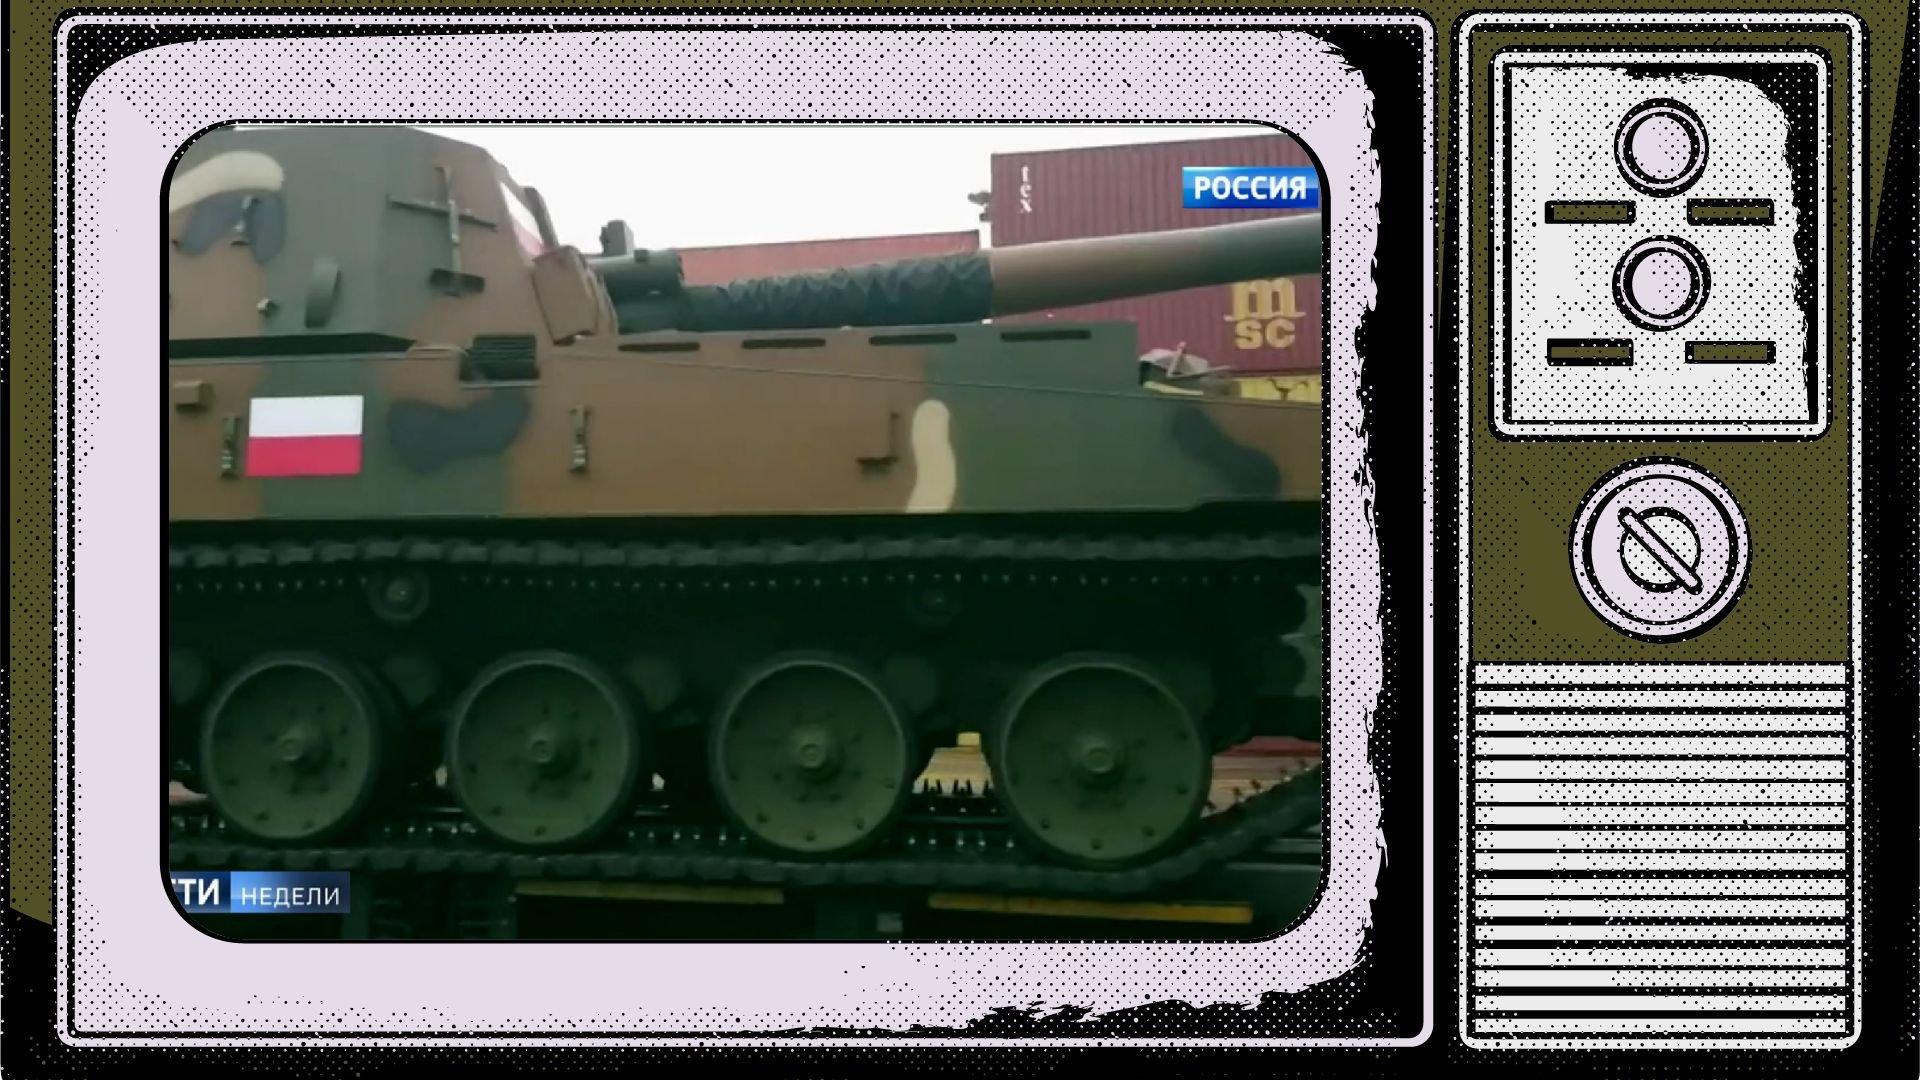 Grafika: w ekranie starego telewizora wklejone zdjęcie pojazdu wojskowego z biało-czerwoną flagą